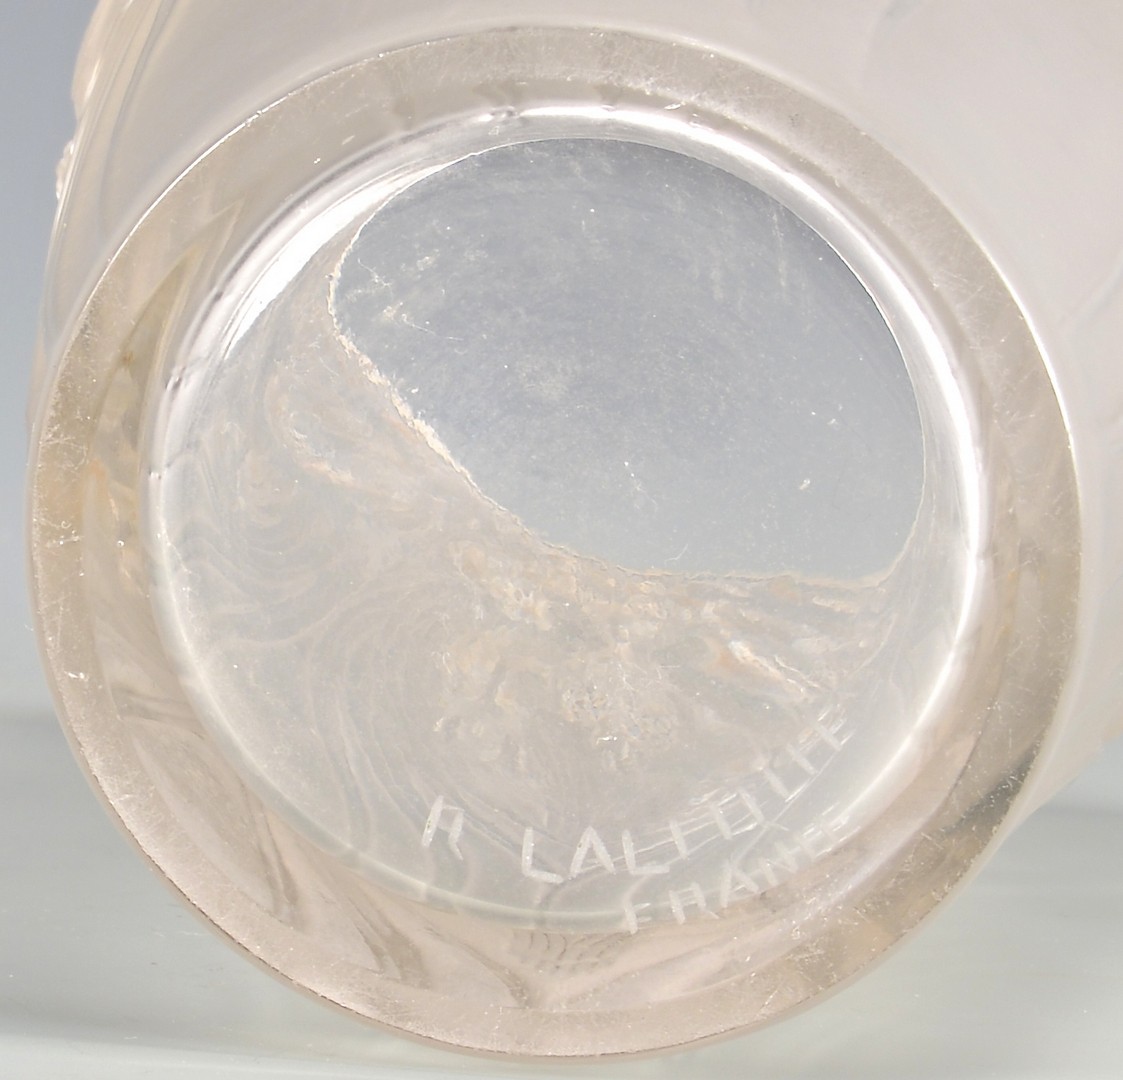 Lot 474: Lalique Coq et Raisins Frosted Vase